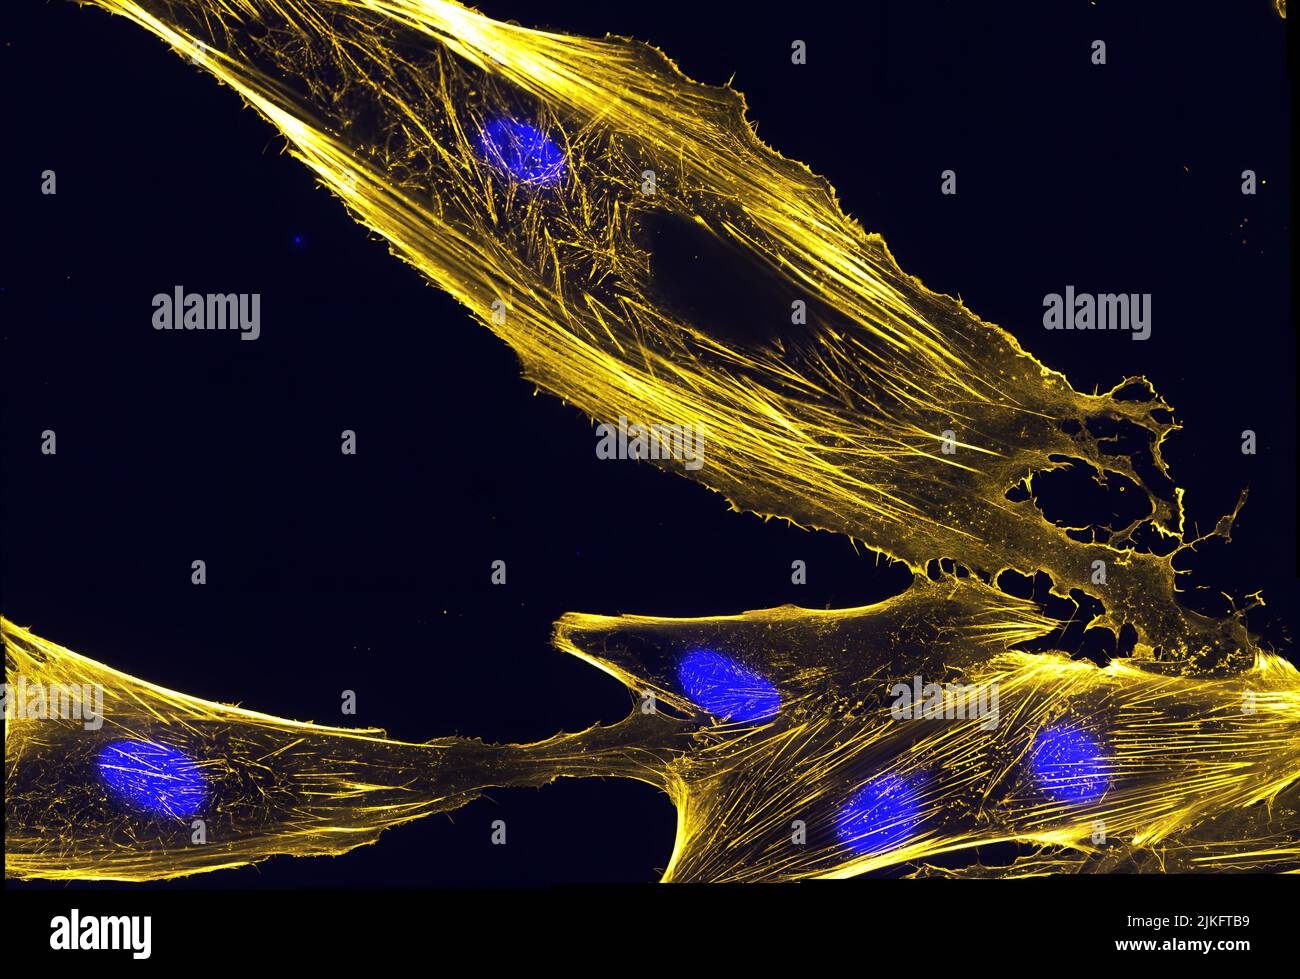 Immagine di immunofluorescenza di fasci di actina in cellule precursori muscolari chiamate mioblasti. Actina è marcata con floidina marcata fluorescentemente, che è una tossina dal fungo Amanita phalloides. I nuclei sono mostrati in blu. Foto Stock